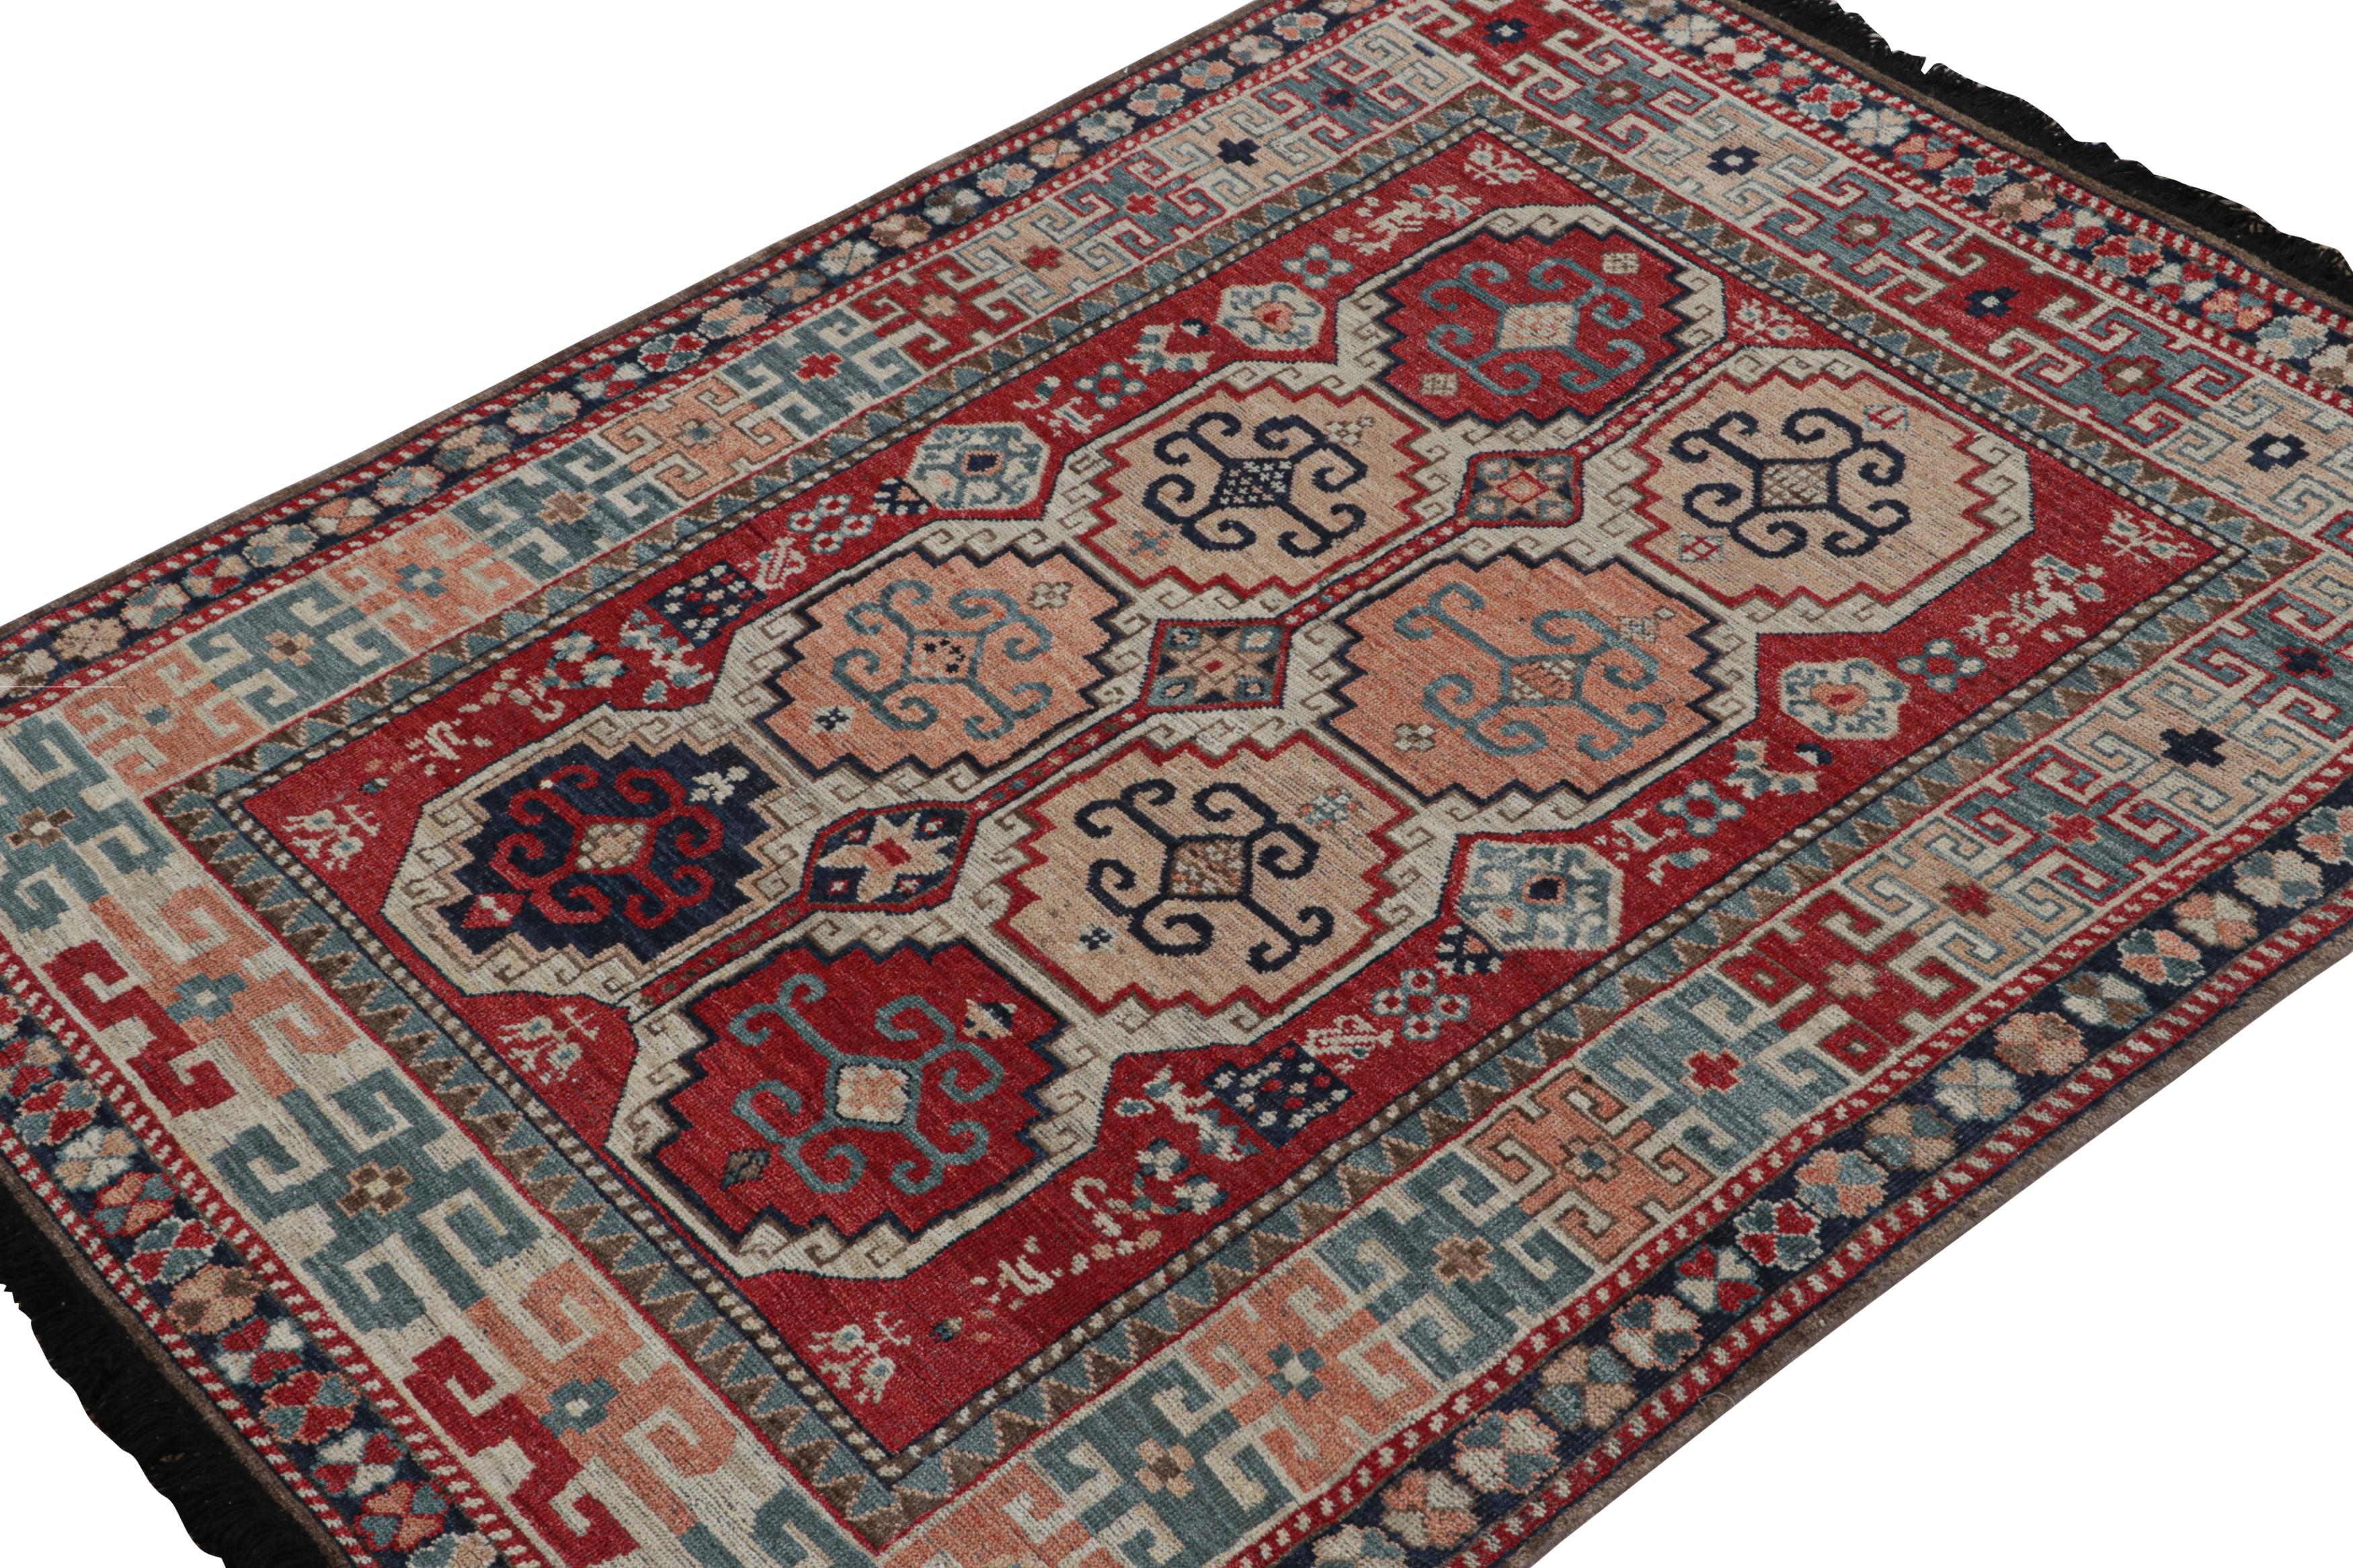 Dieser Teppich in der Größe 5x7 ist ein Neuzugang in der Burano-Kollektion von Rug & Kilim. Handgeknüpft aus Wolle.

Über das Design: 

Inspiriert von antiken Stammesteppichen, schwelgt dieser Teppich in Blau und Rot mit definierter Bewegung und